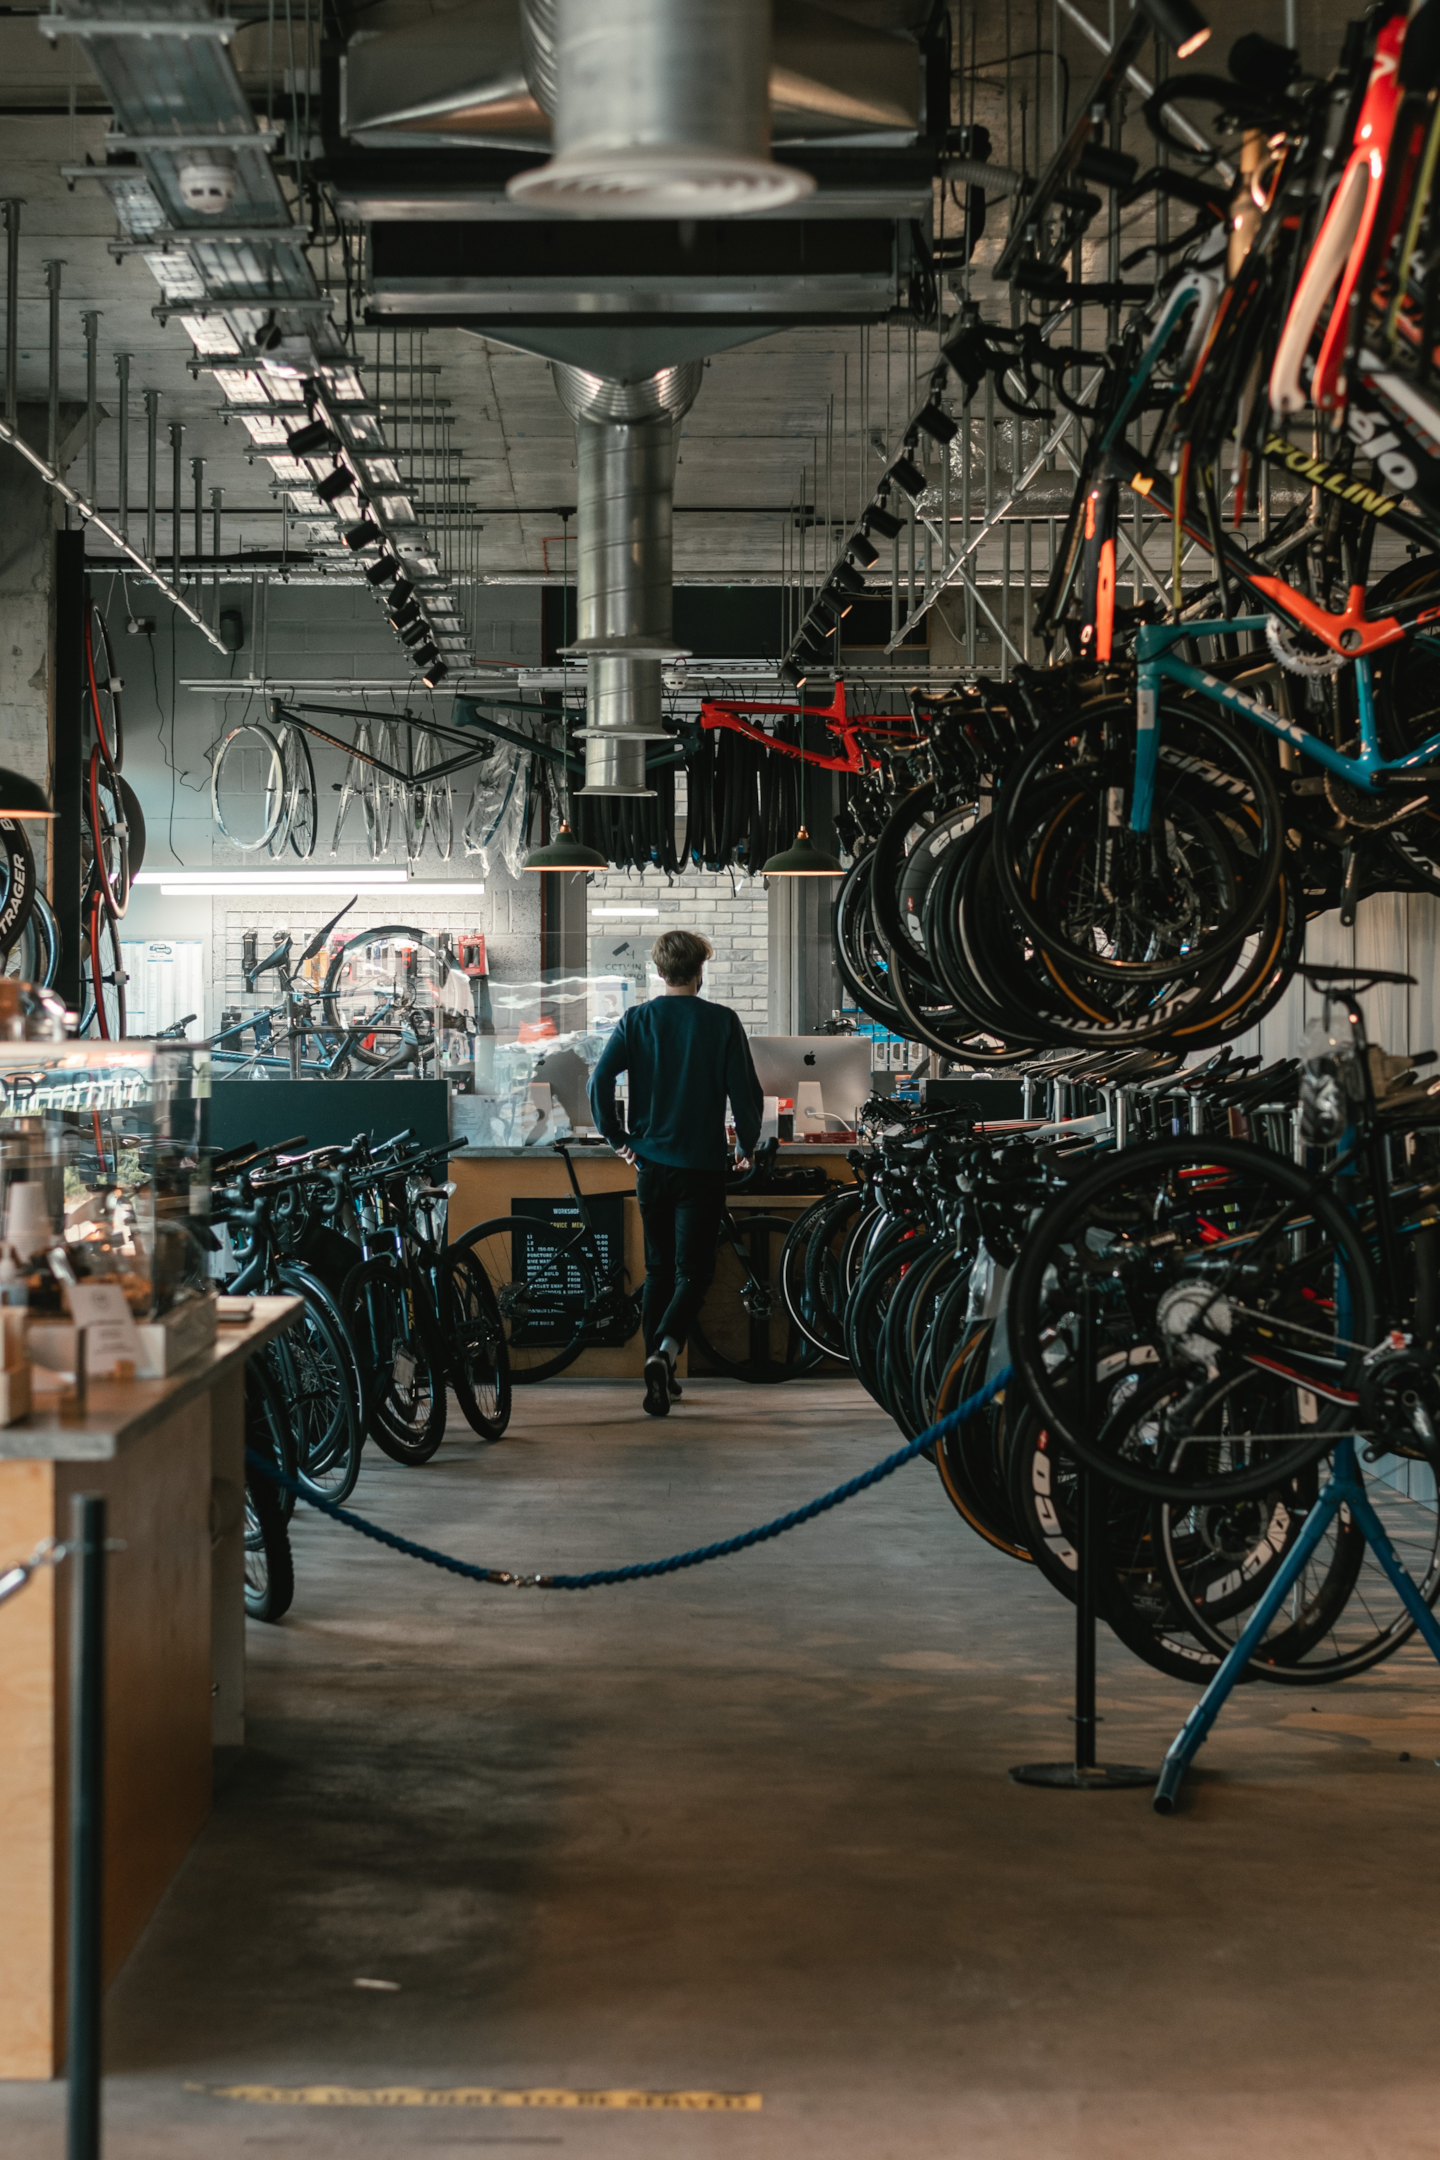 Oficina de bike. Foto de Tom Austin, Unsplash.